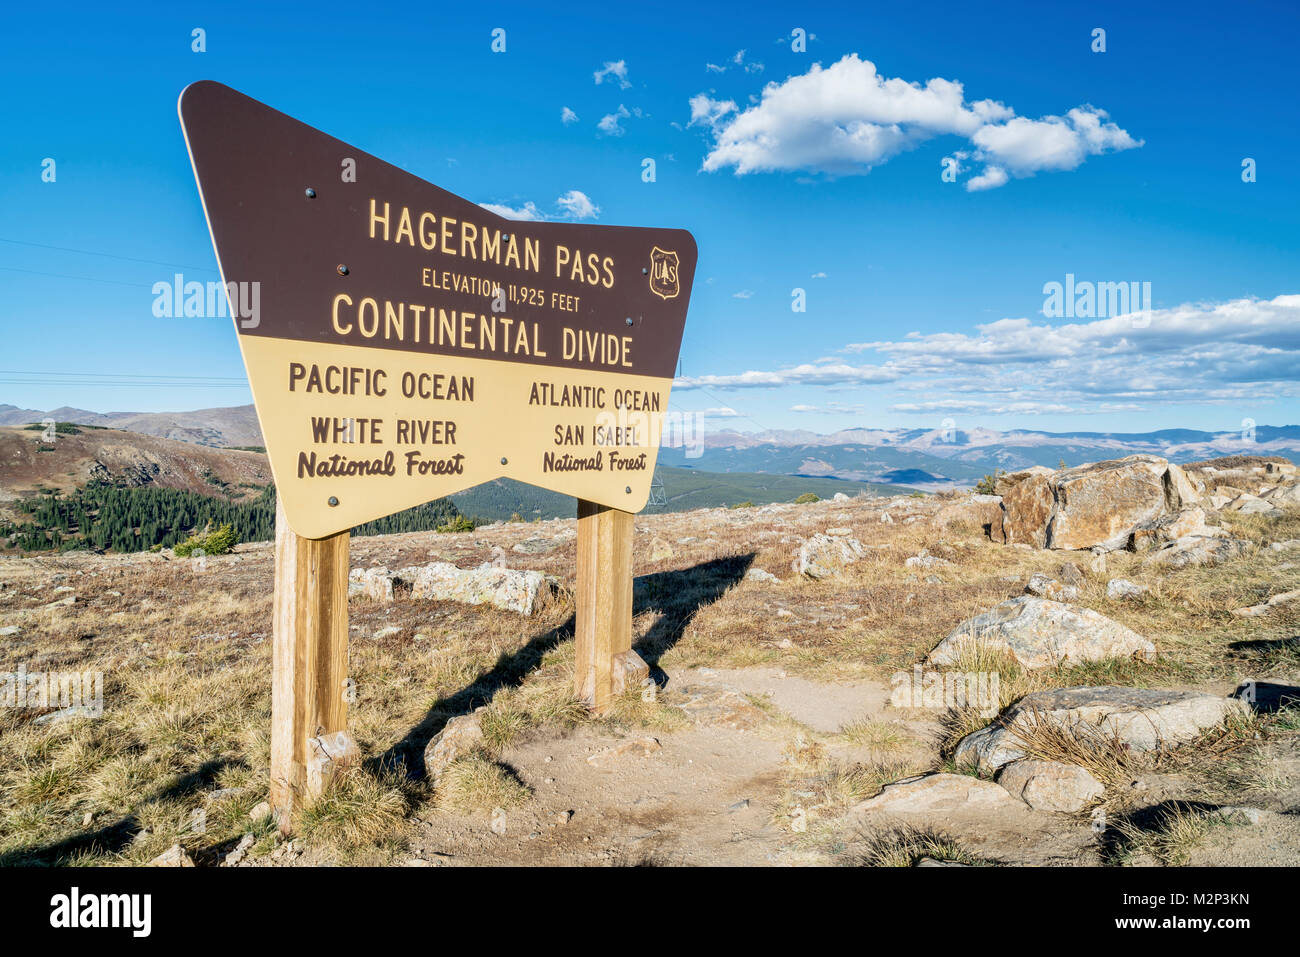 HAGERMAN PASS, le 27 septembre 2016 : US Forest Service signer lors d'un sommet d'Hagerman Pass et continentale de partage dans les Montagnes Rocheuses du Colorado. Banque D'Images